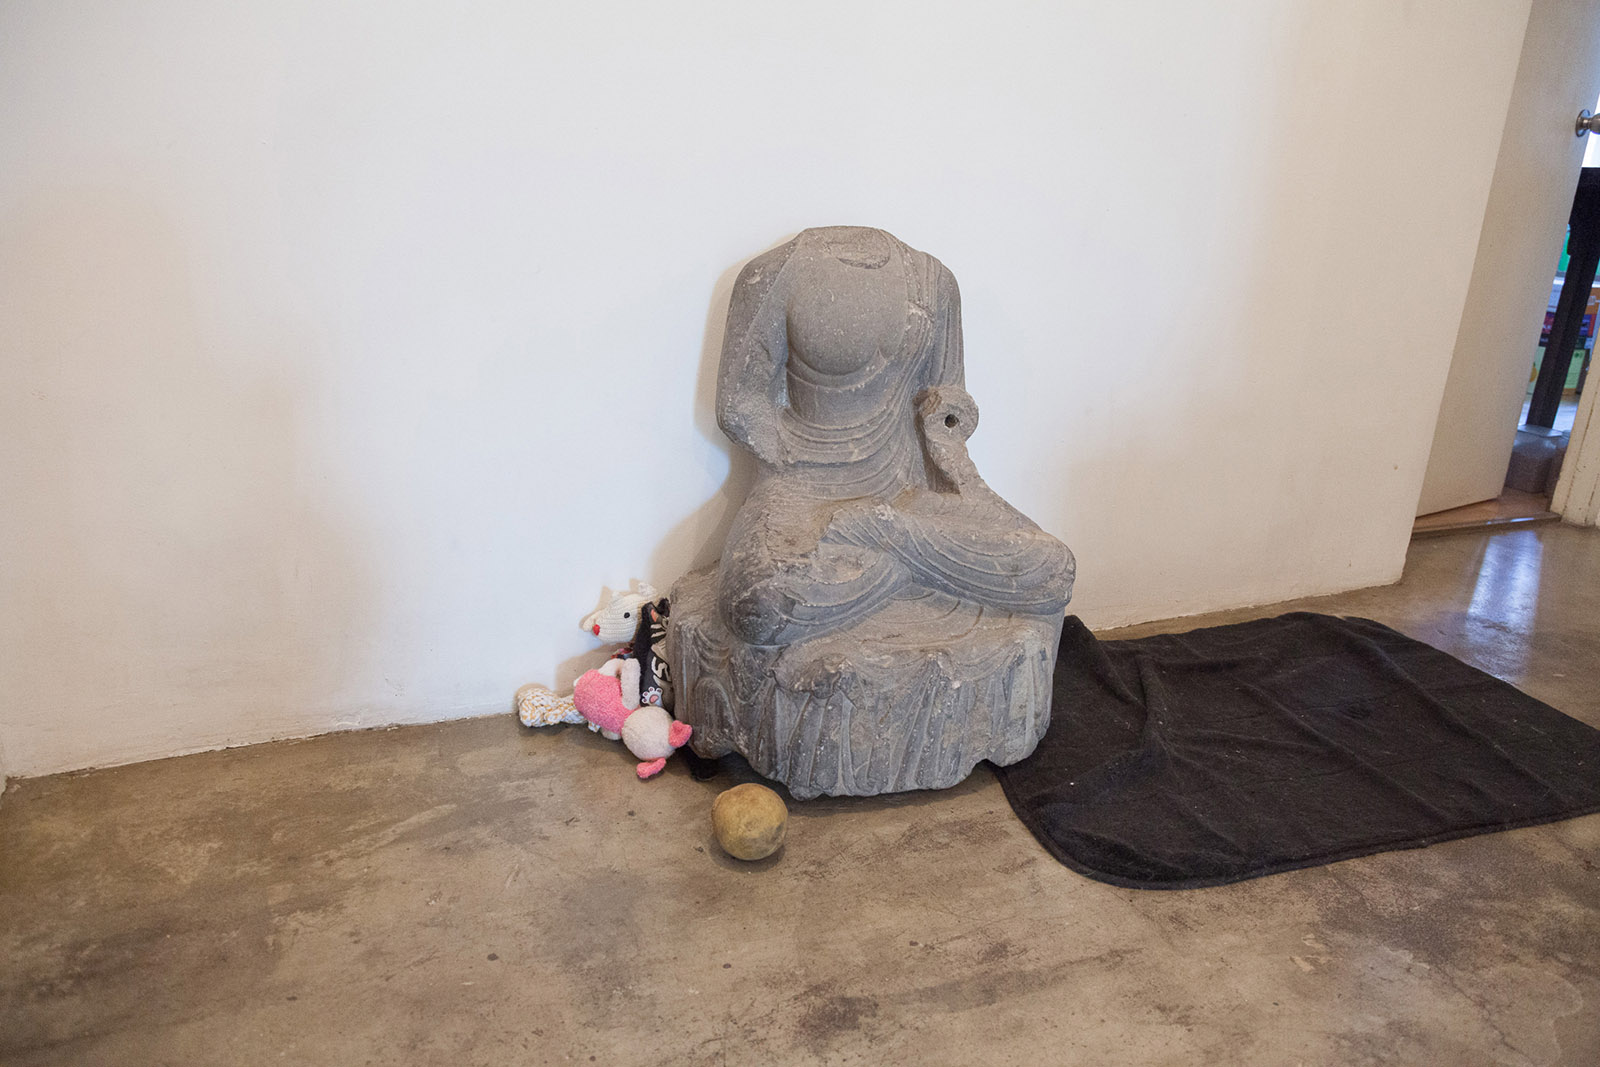 Schist Buddha, toys, and a sleeping mat